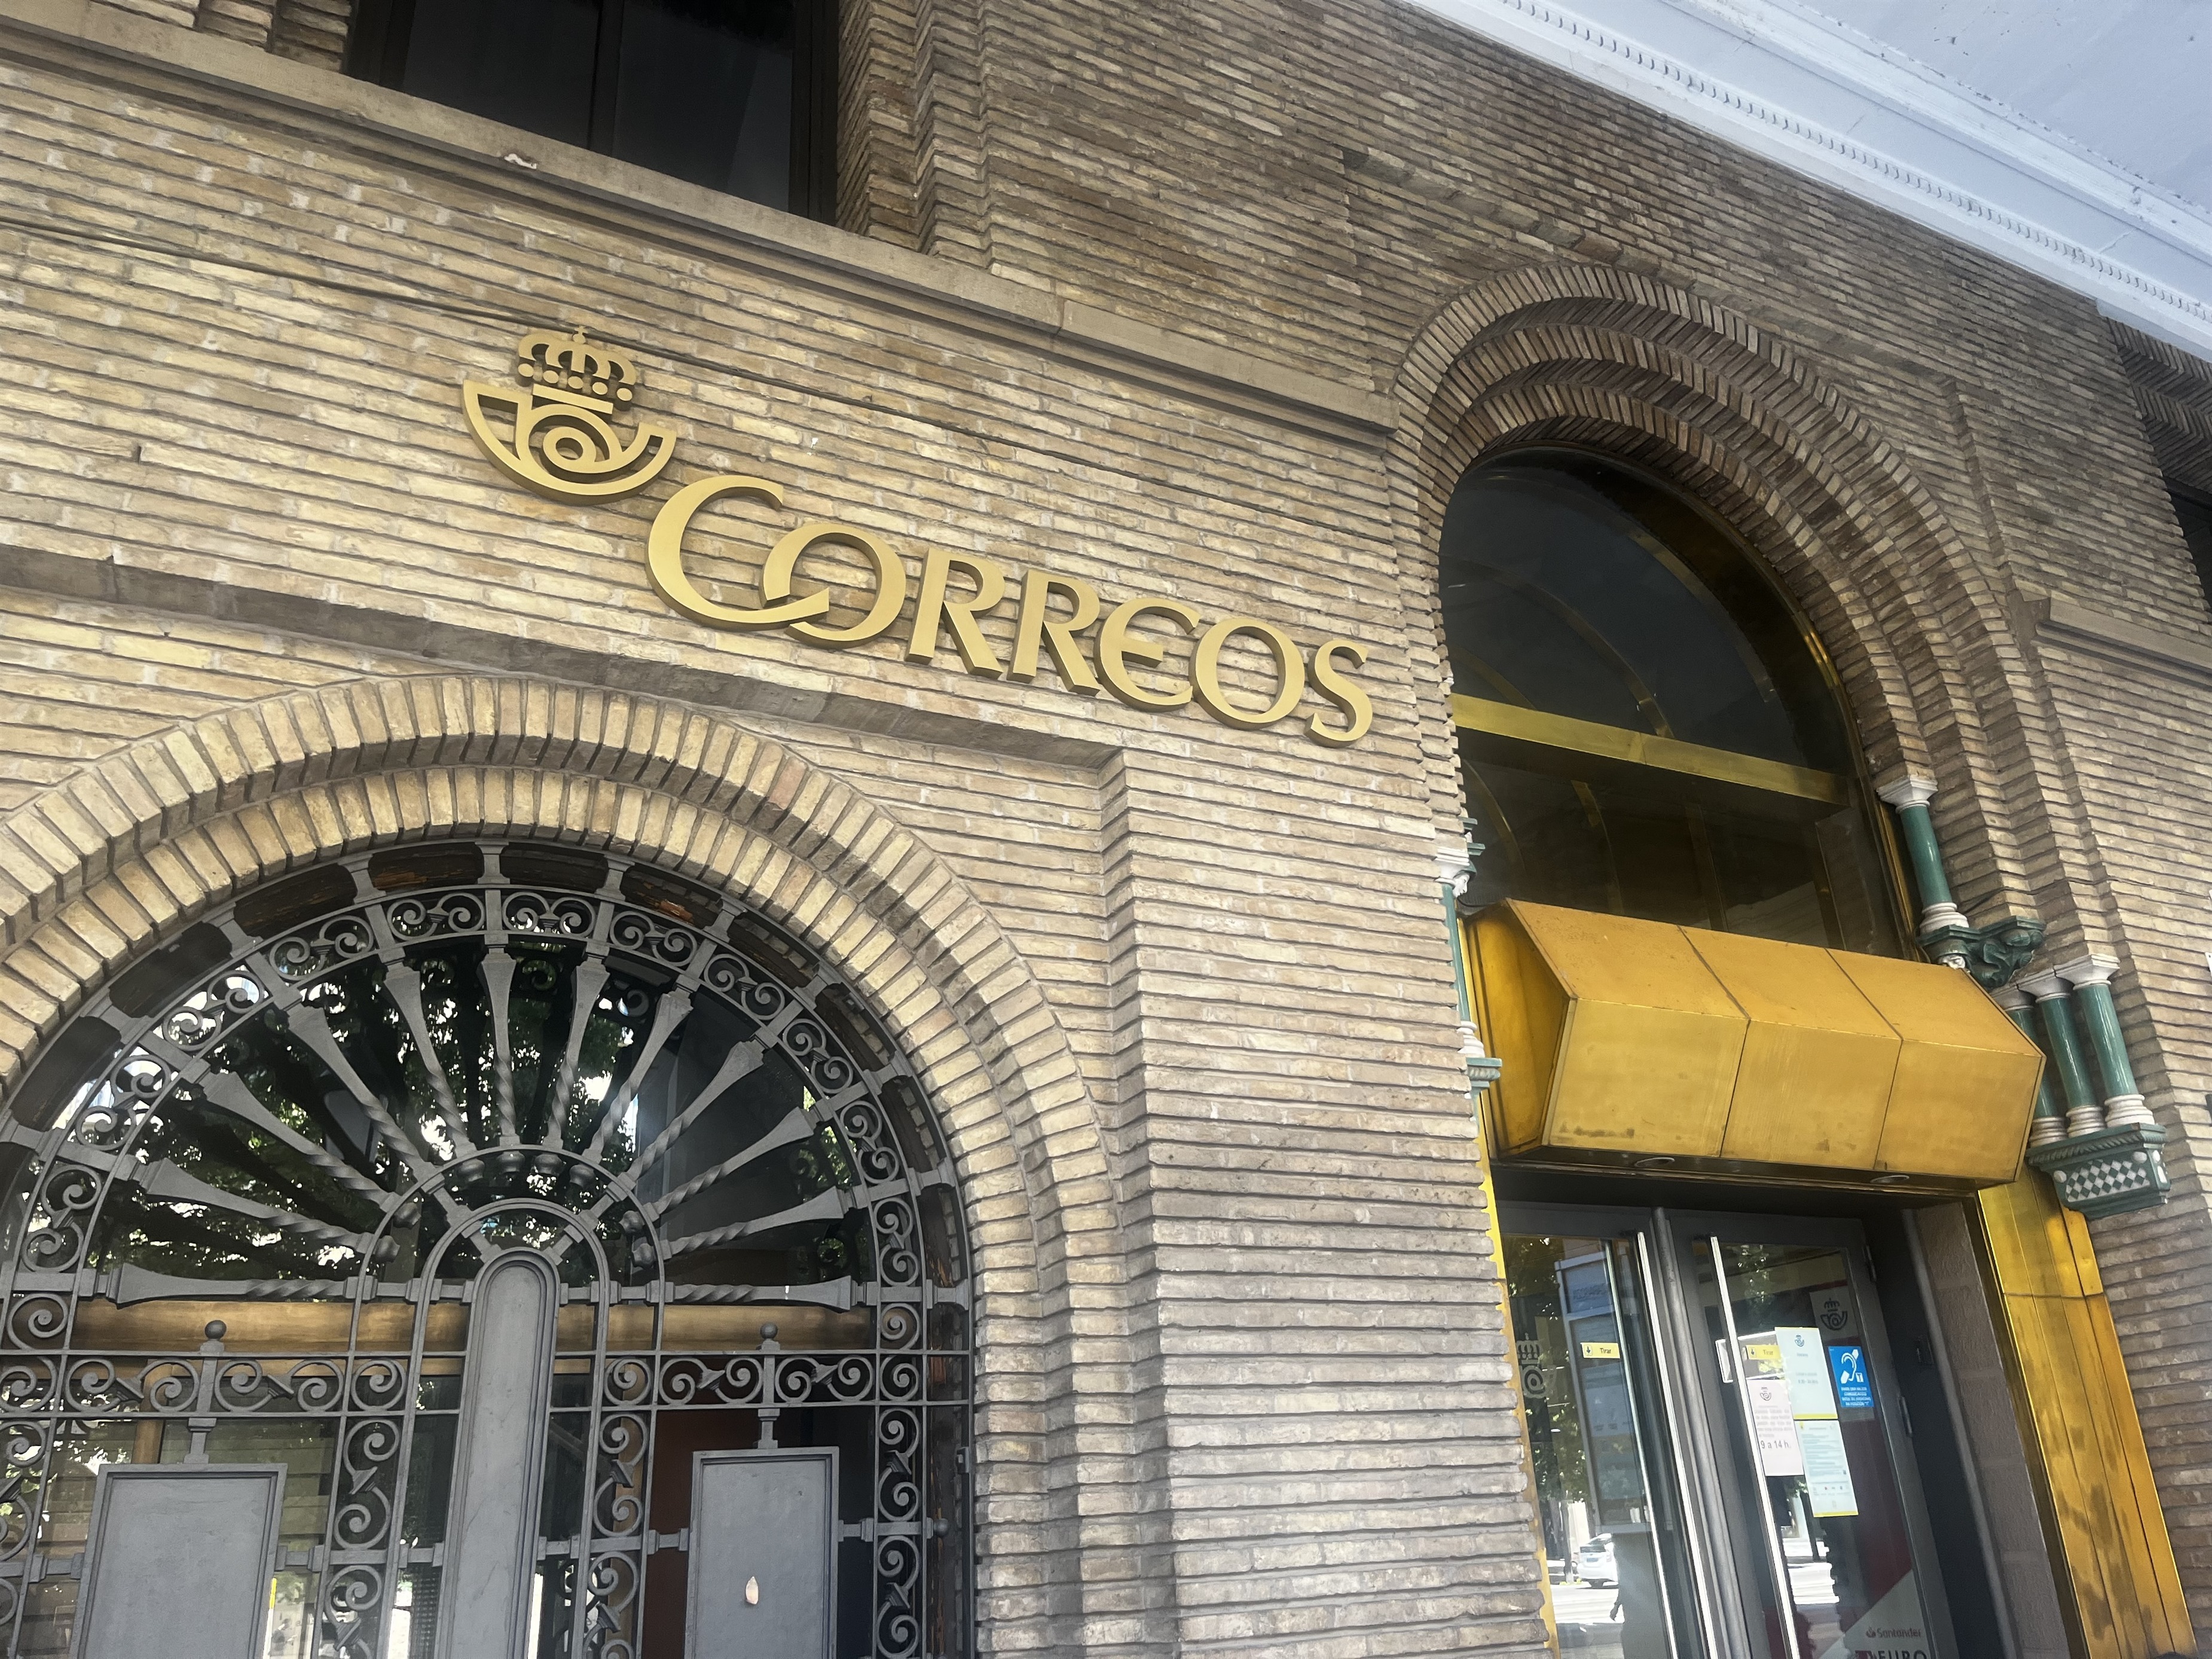 Entrada a la oficina de Correos en el paseo de Independencia de Zaragoza.